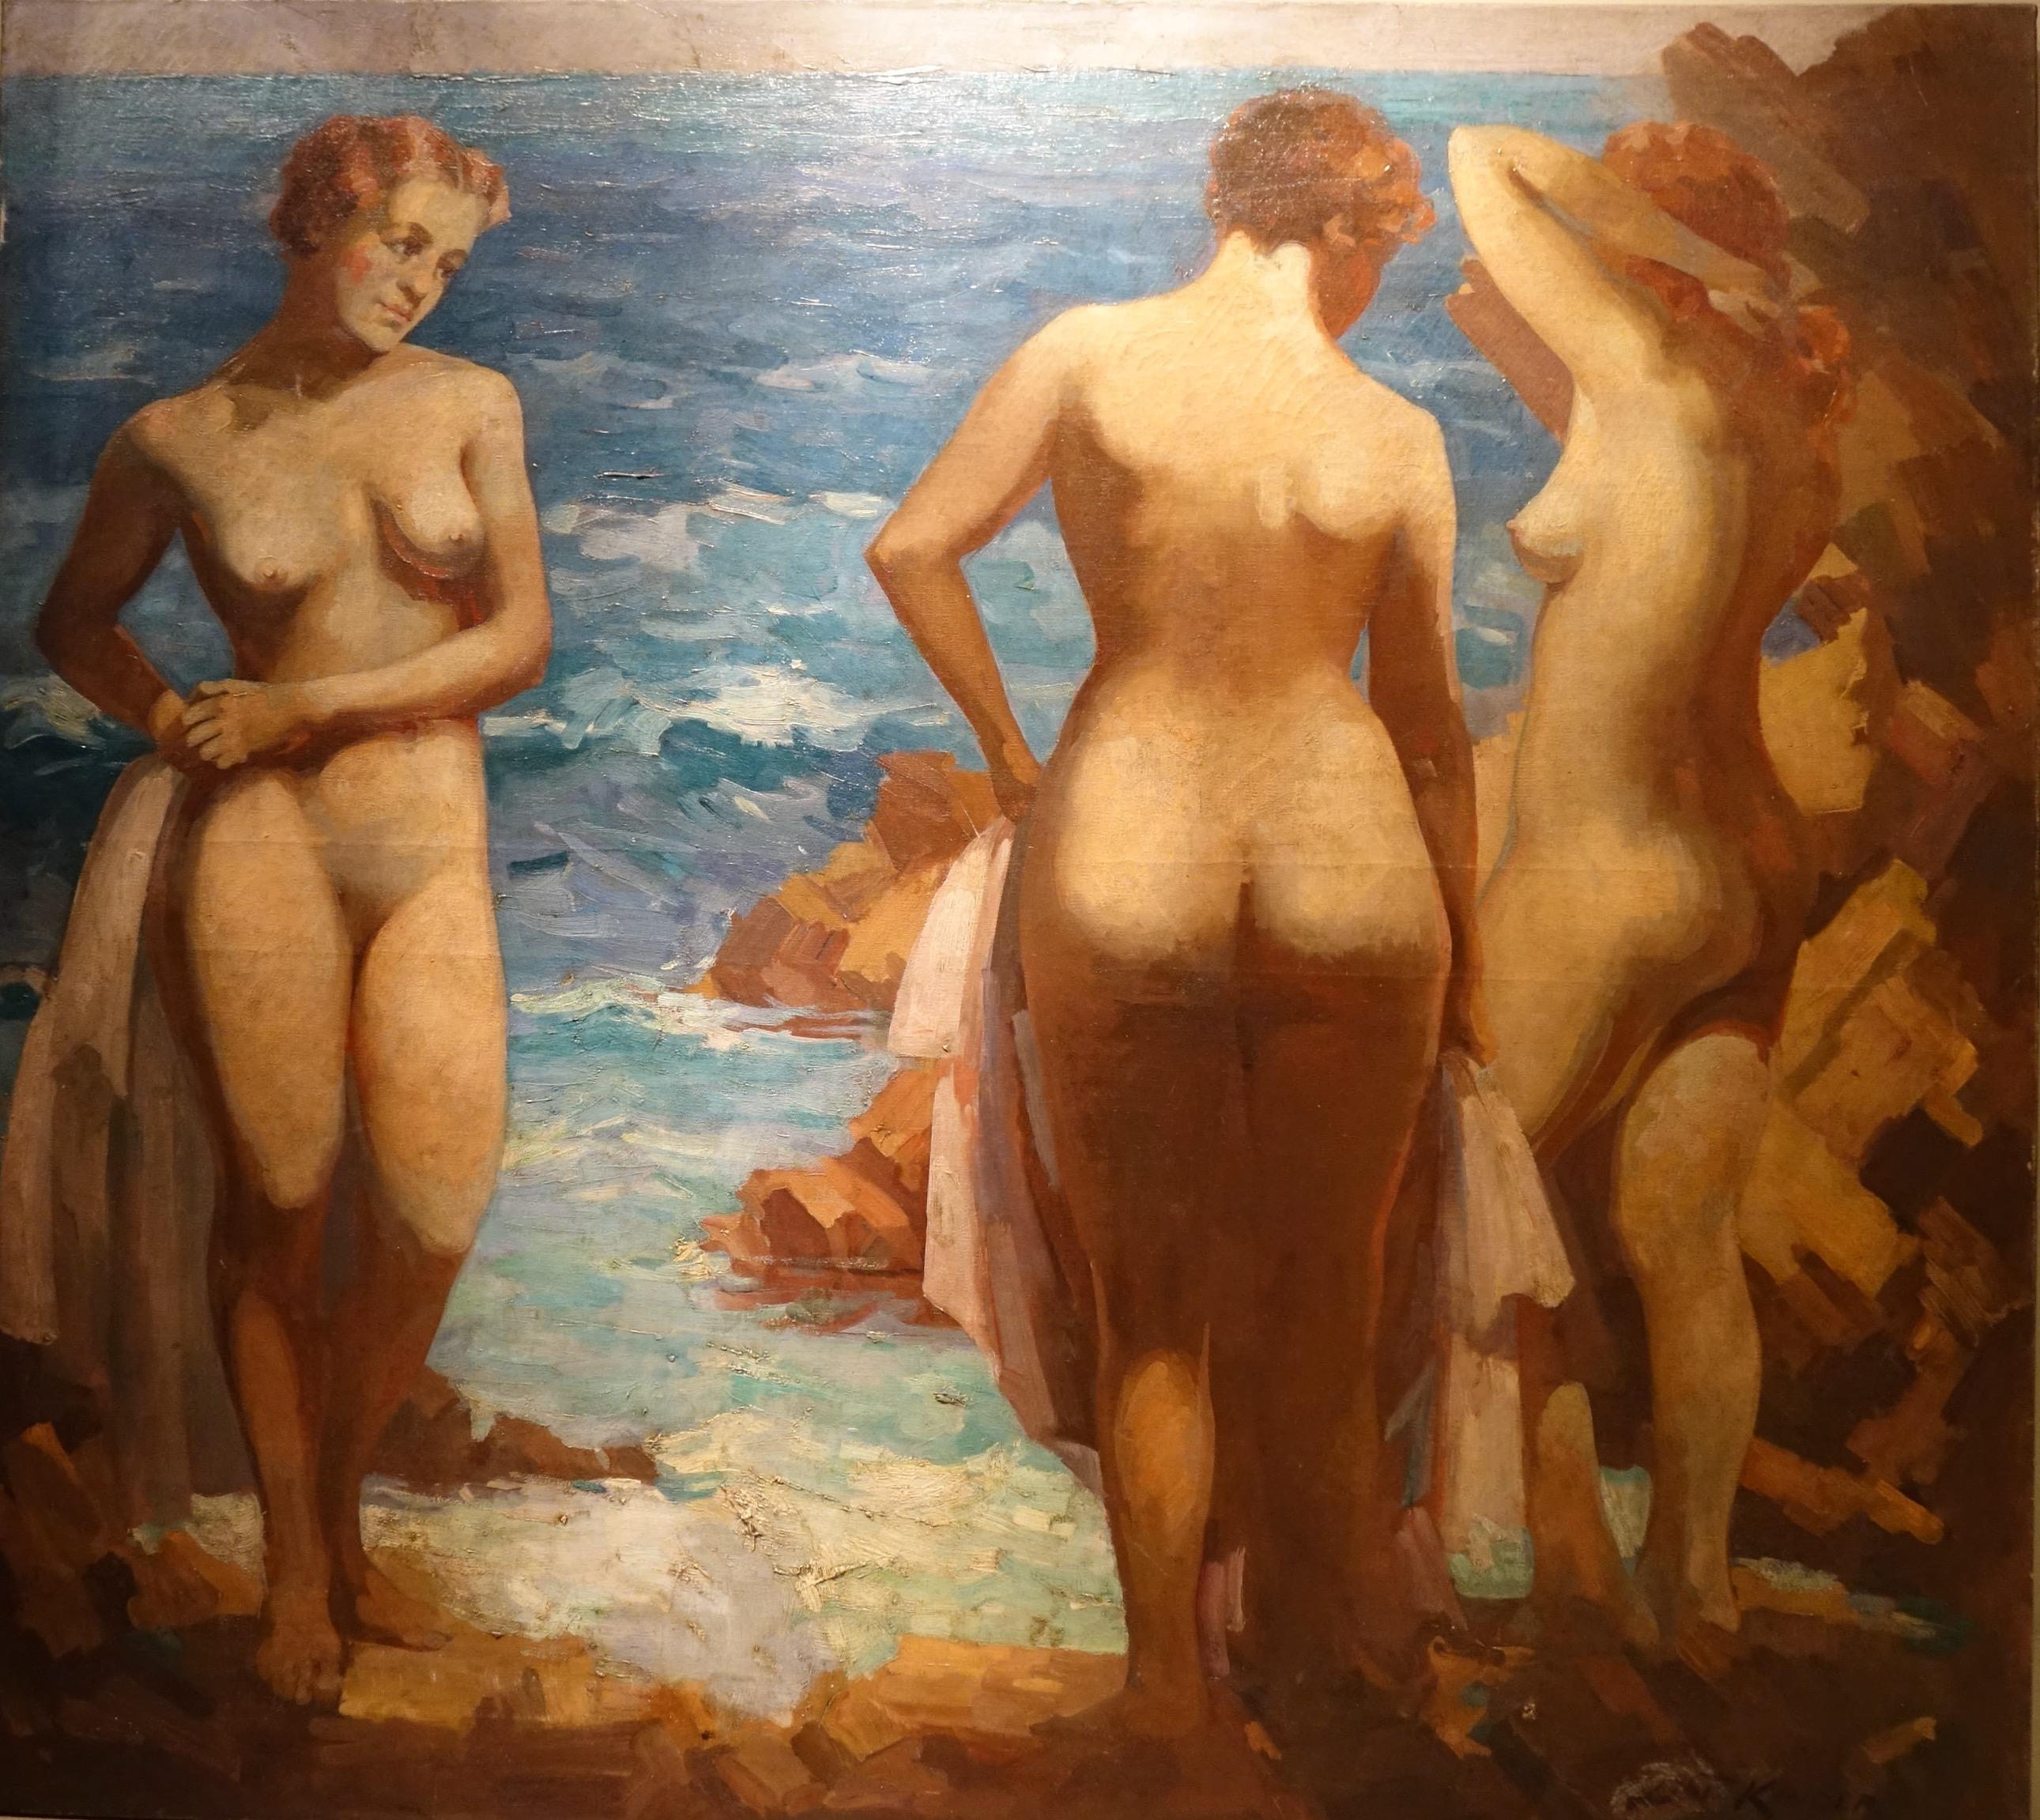 Öl auf Leinwand, das drei junge nackte Frauen darstellt, die gerade gebadet haben und jeweils ein Handtuch in der Hand halten. Die eine ist von vorne dargestellt, die mittlere von hinten, die rechte im Profil. Im Hintergrund das Meer und der ferne